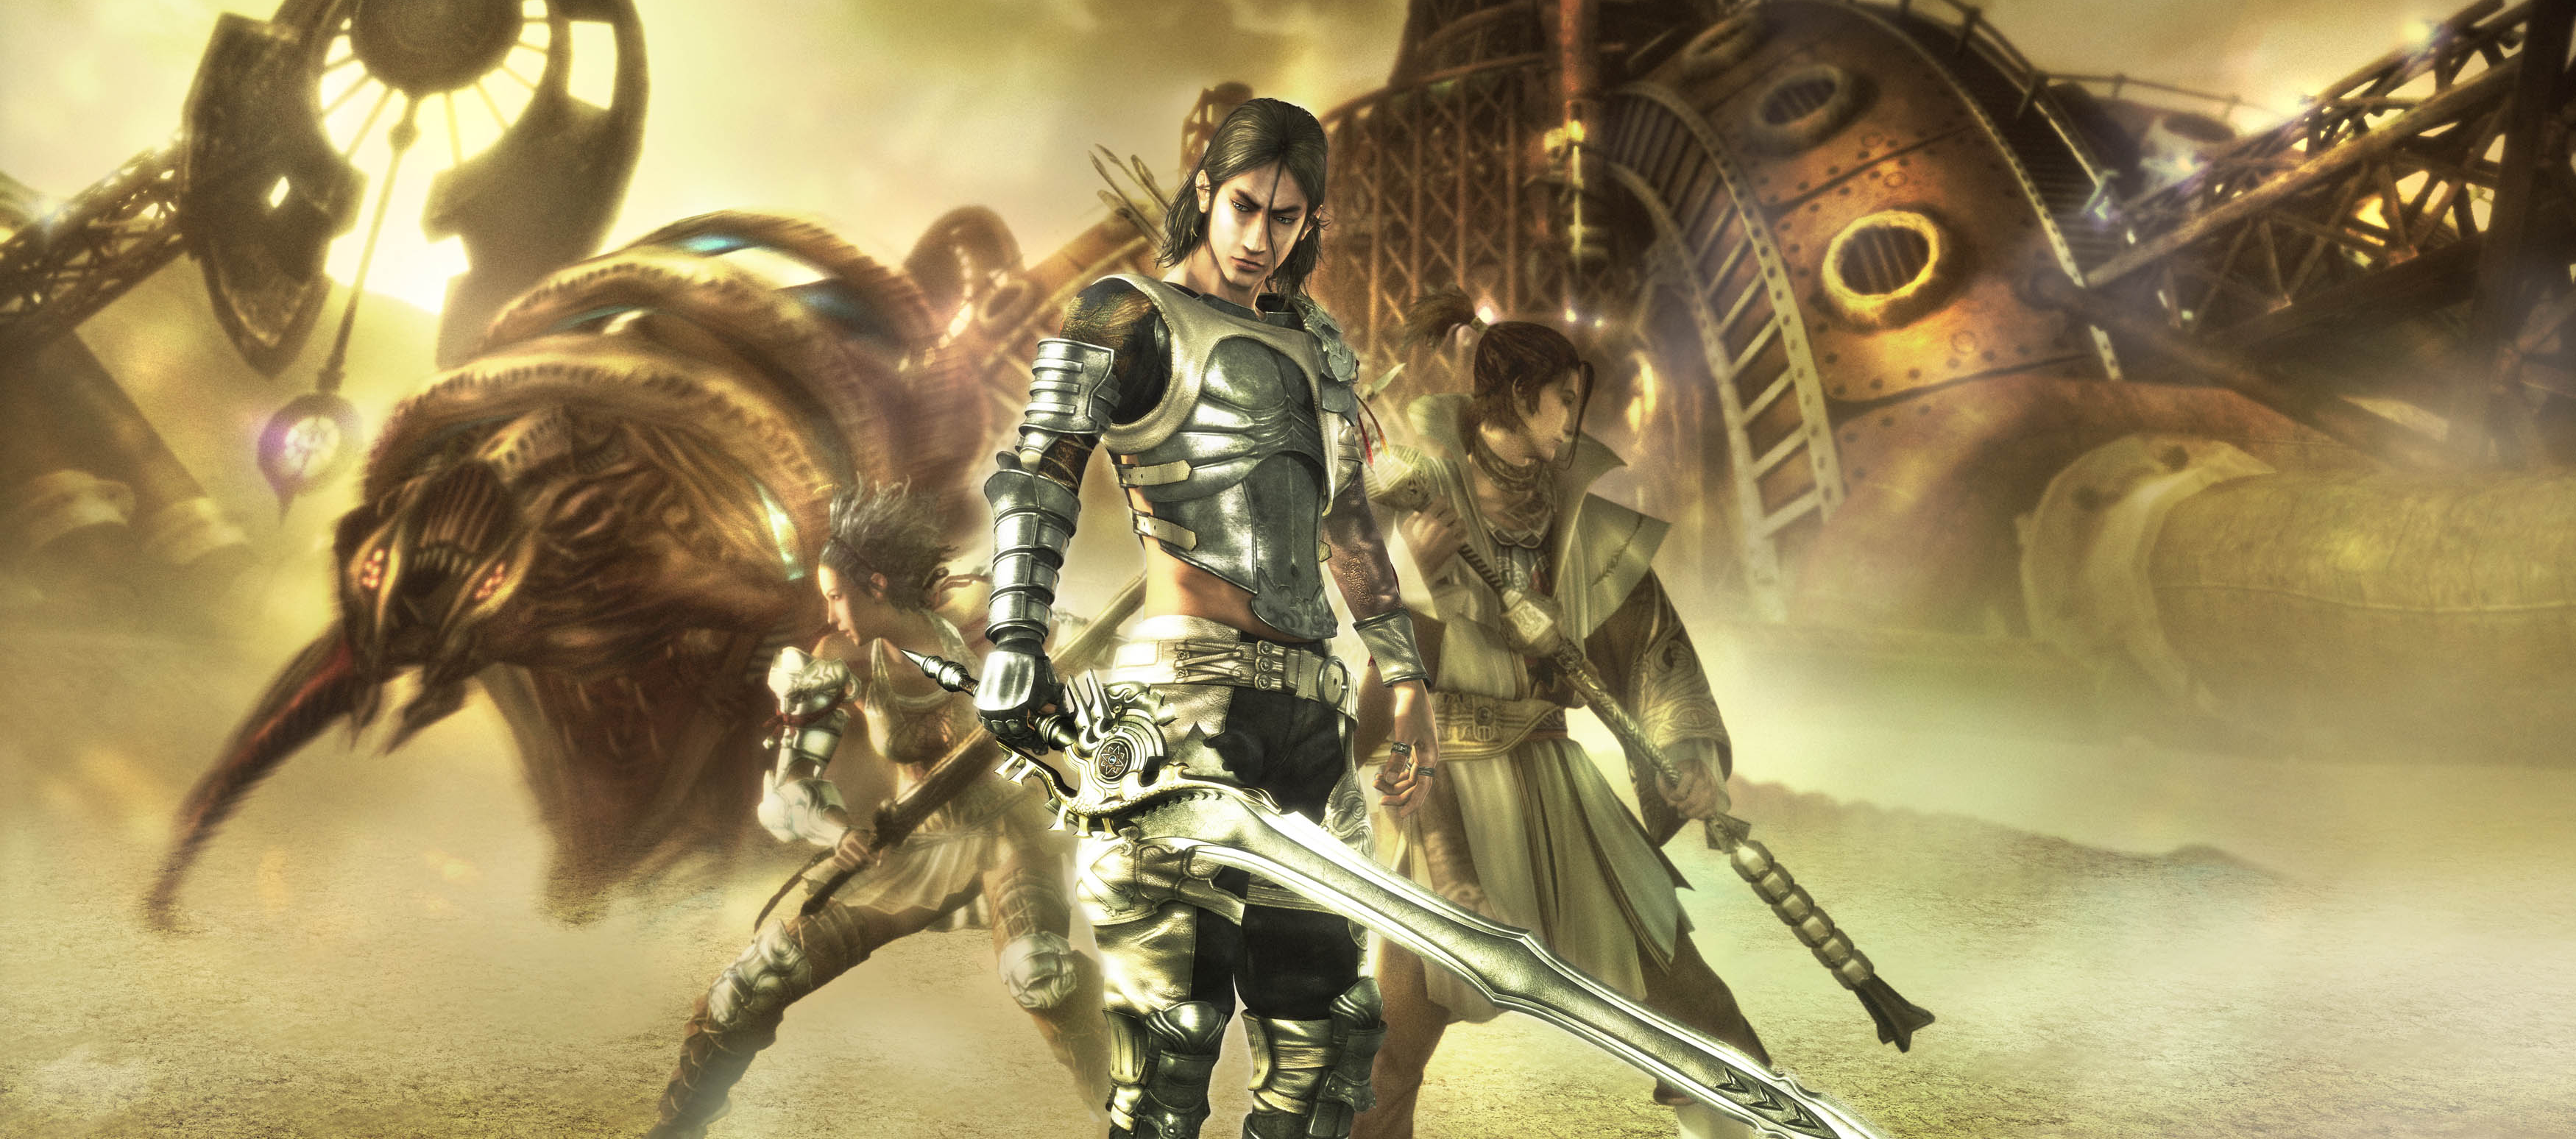 Lost Odyssey: ¿El sucesor de Final Fantasy?